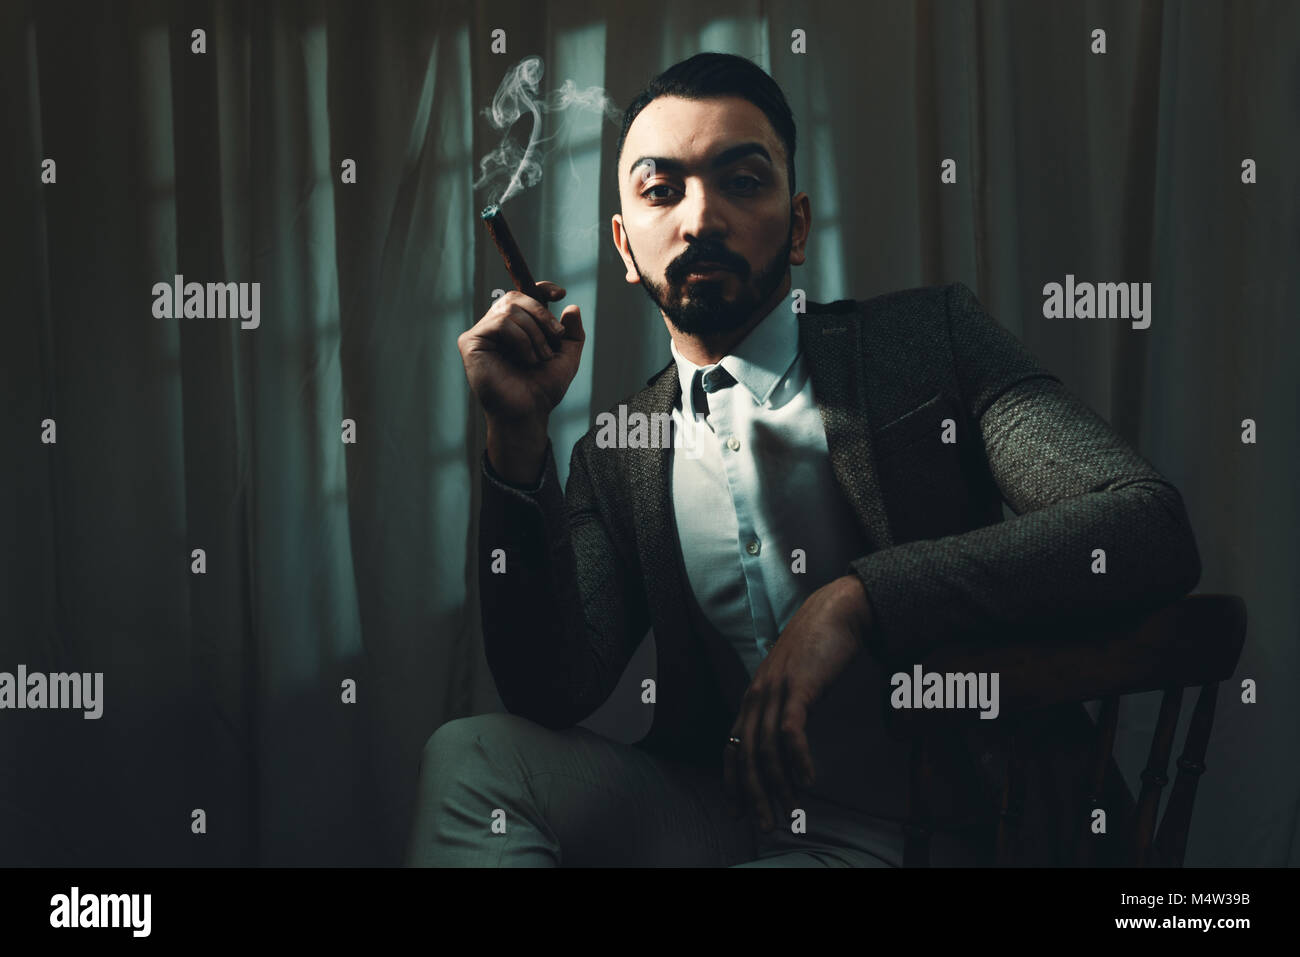 Film Noir concetto di uomo di fumare un sigaro con tono di qualità cinematografica Foto Stock